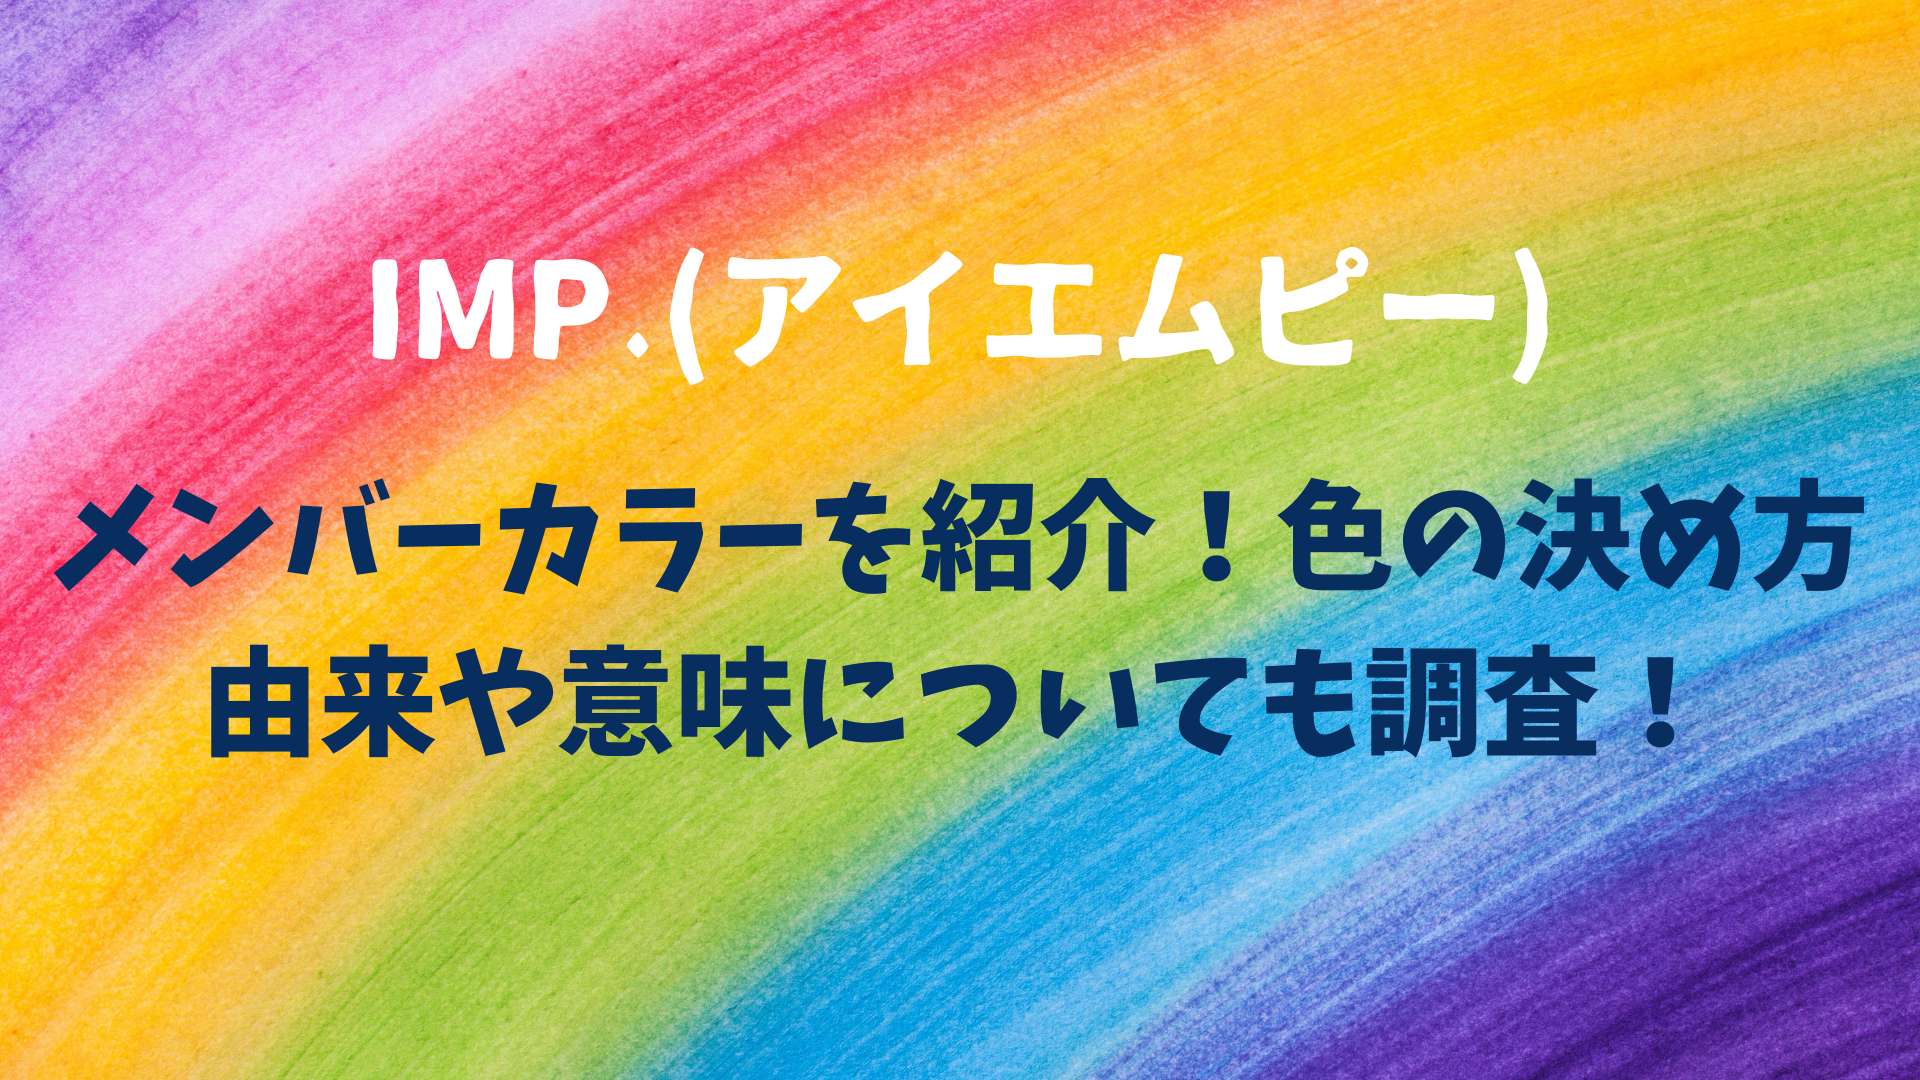 IMP.(アイエムピー)のメンバーカラーを紹介！色の決め方由来や意味についても調査！のアイキャッチ画像